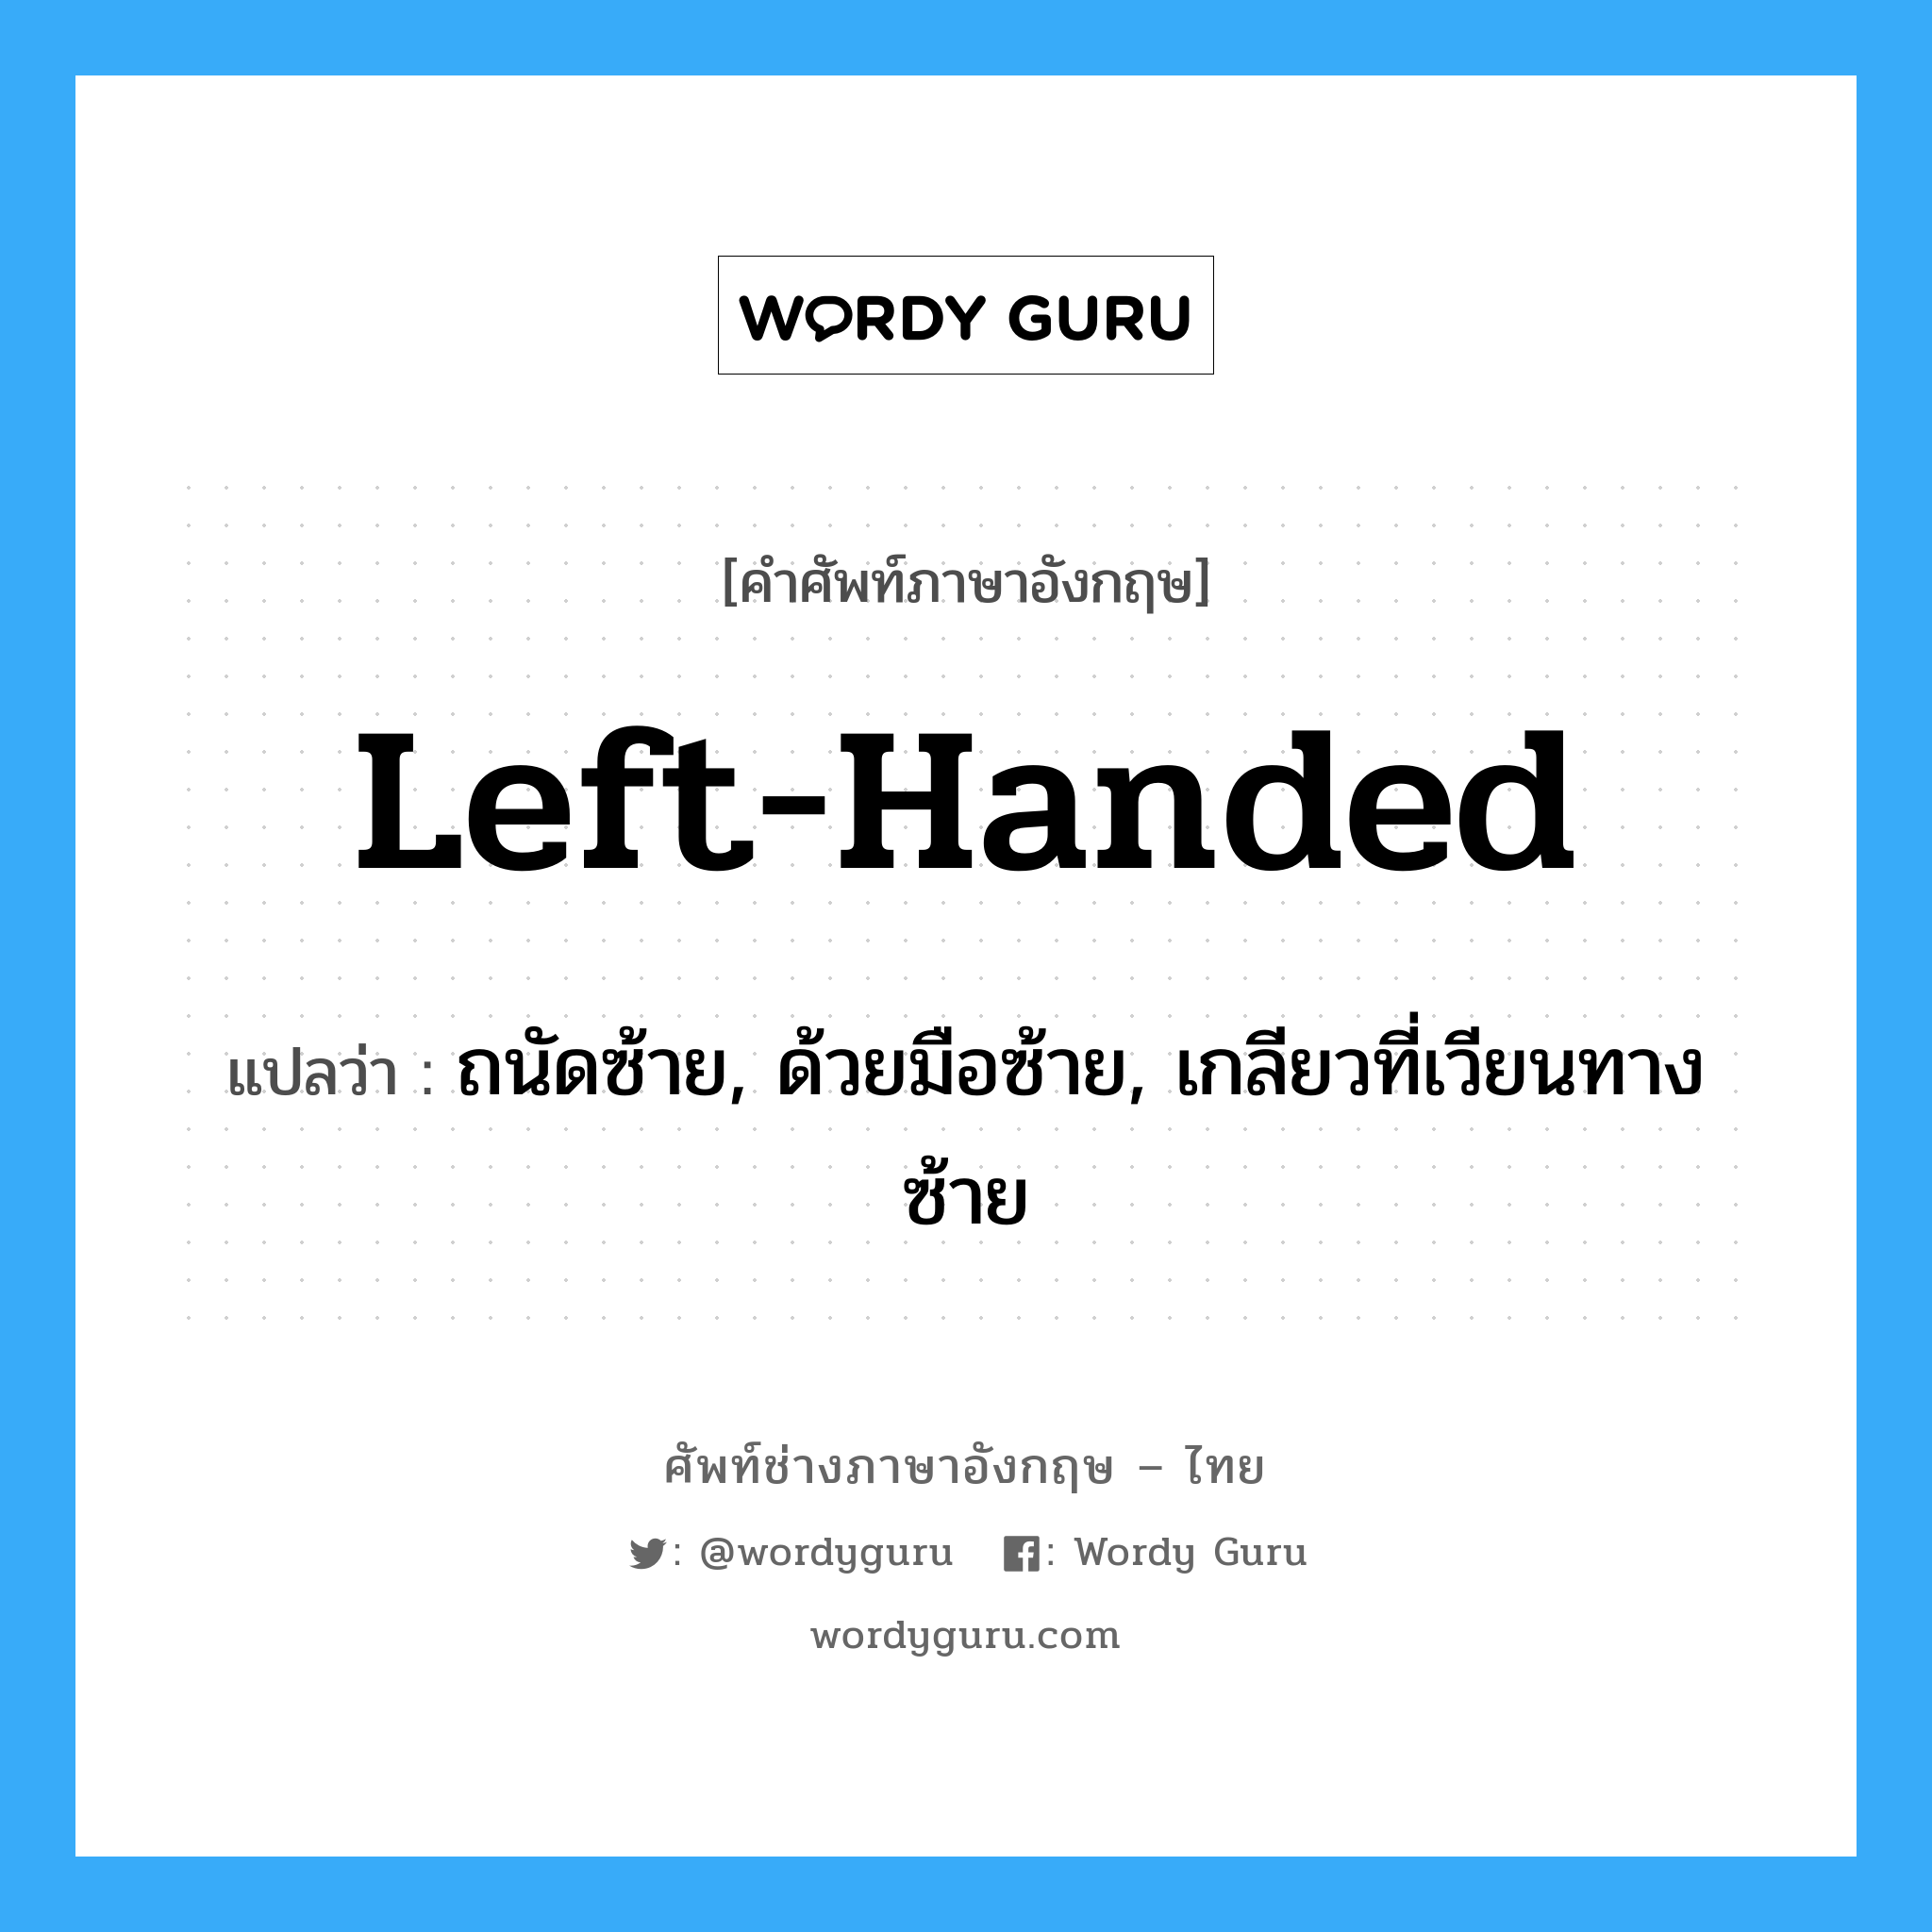 left-handed แปลว่า?, คำศัพท์ช่างภาษาอังกฤษ - ไทย left-handed คำศัพท์ภาษาอังกฤษ left-handed แปลว่า ถนัดซ้าย, ด้วยมือซ้าย, เกลียวที่เวียนทางซ้าย